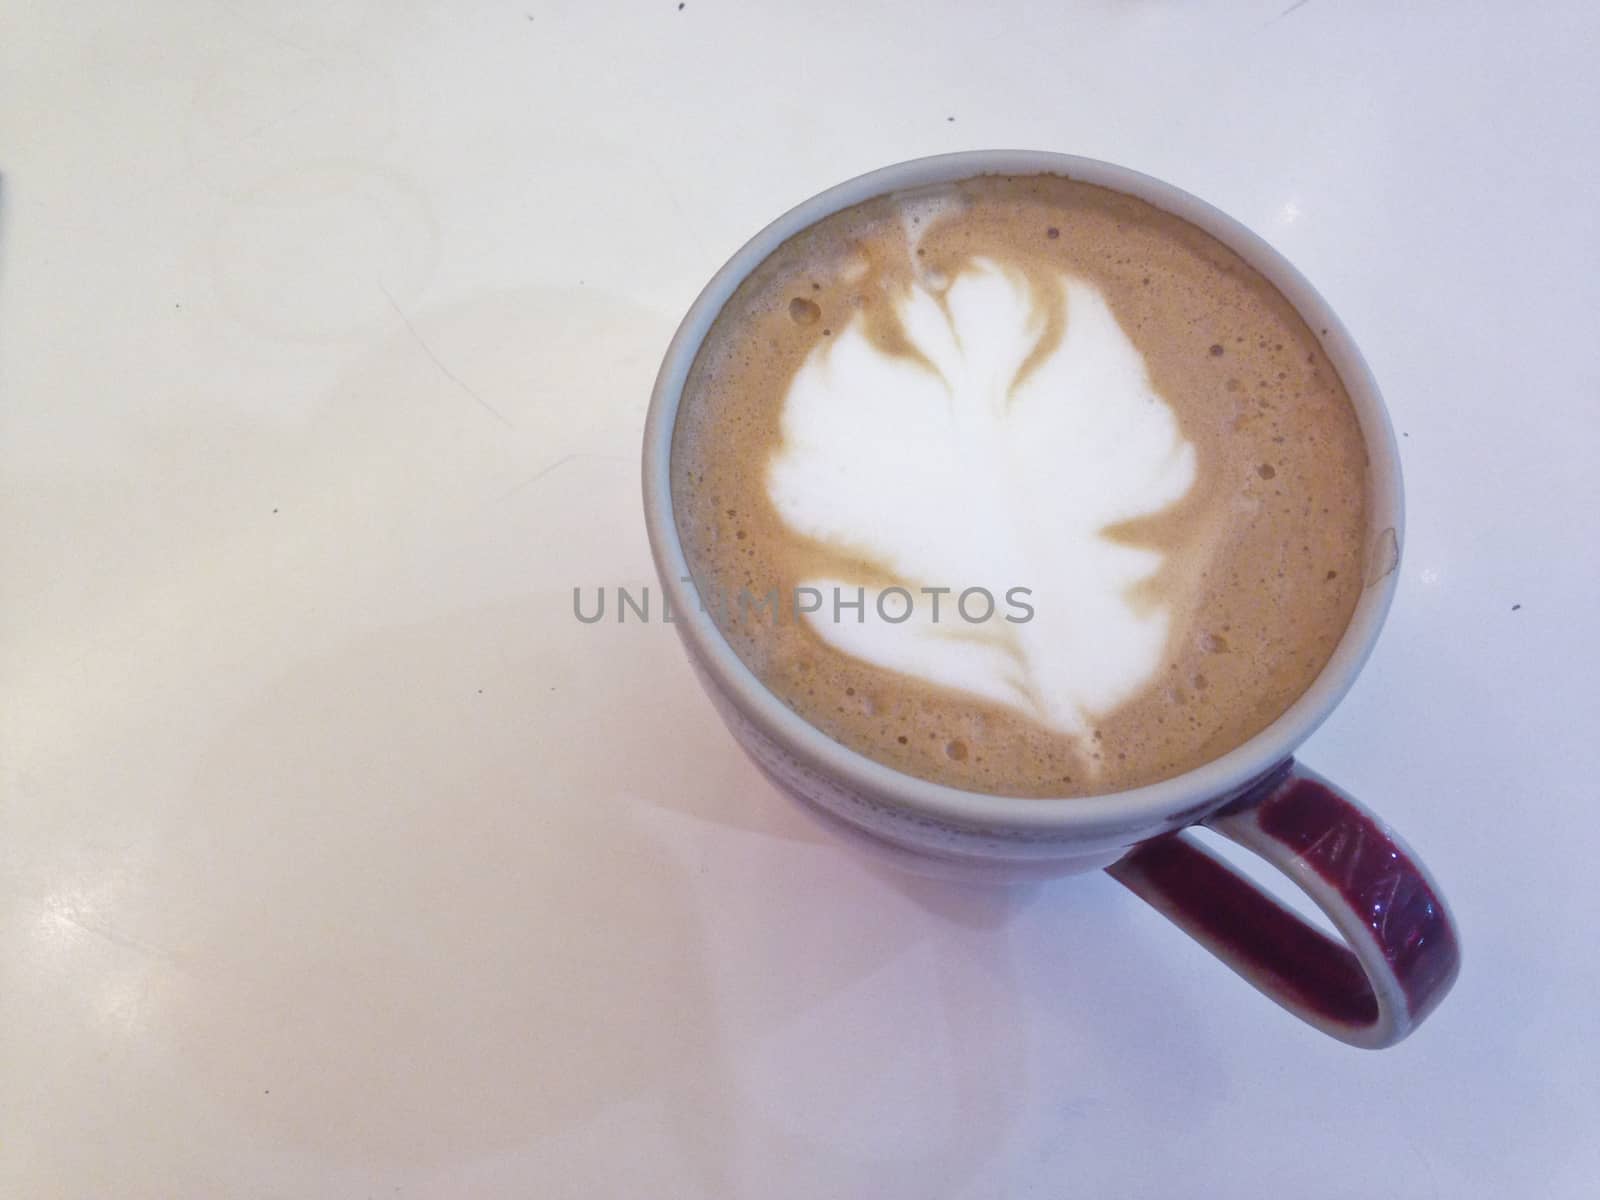 Hot coffee latte art in a cup by eyeofpaul